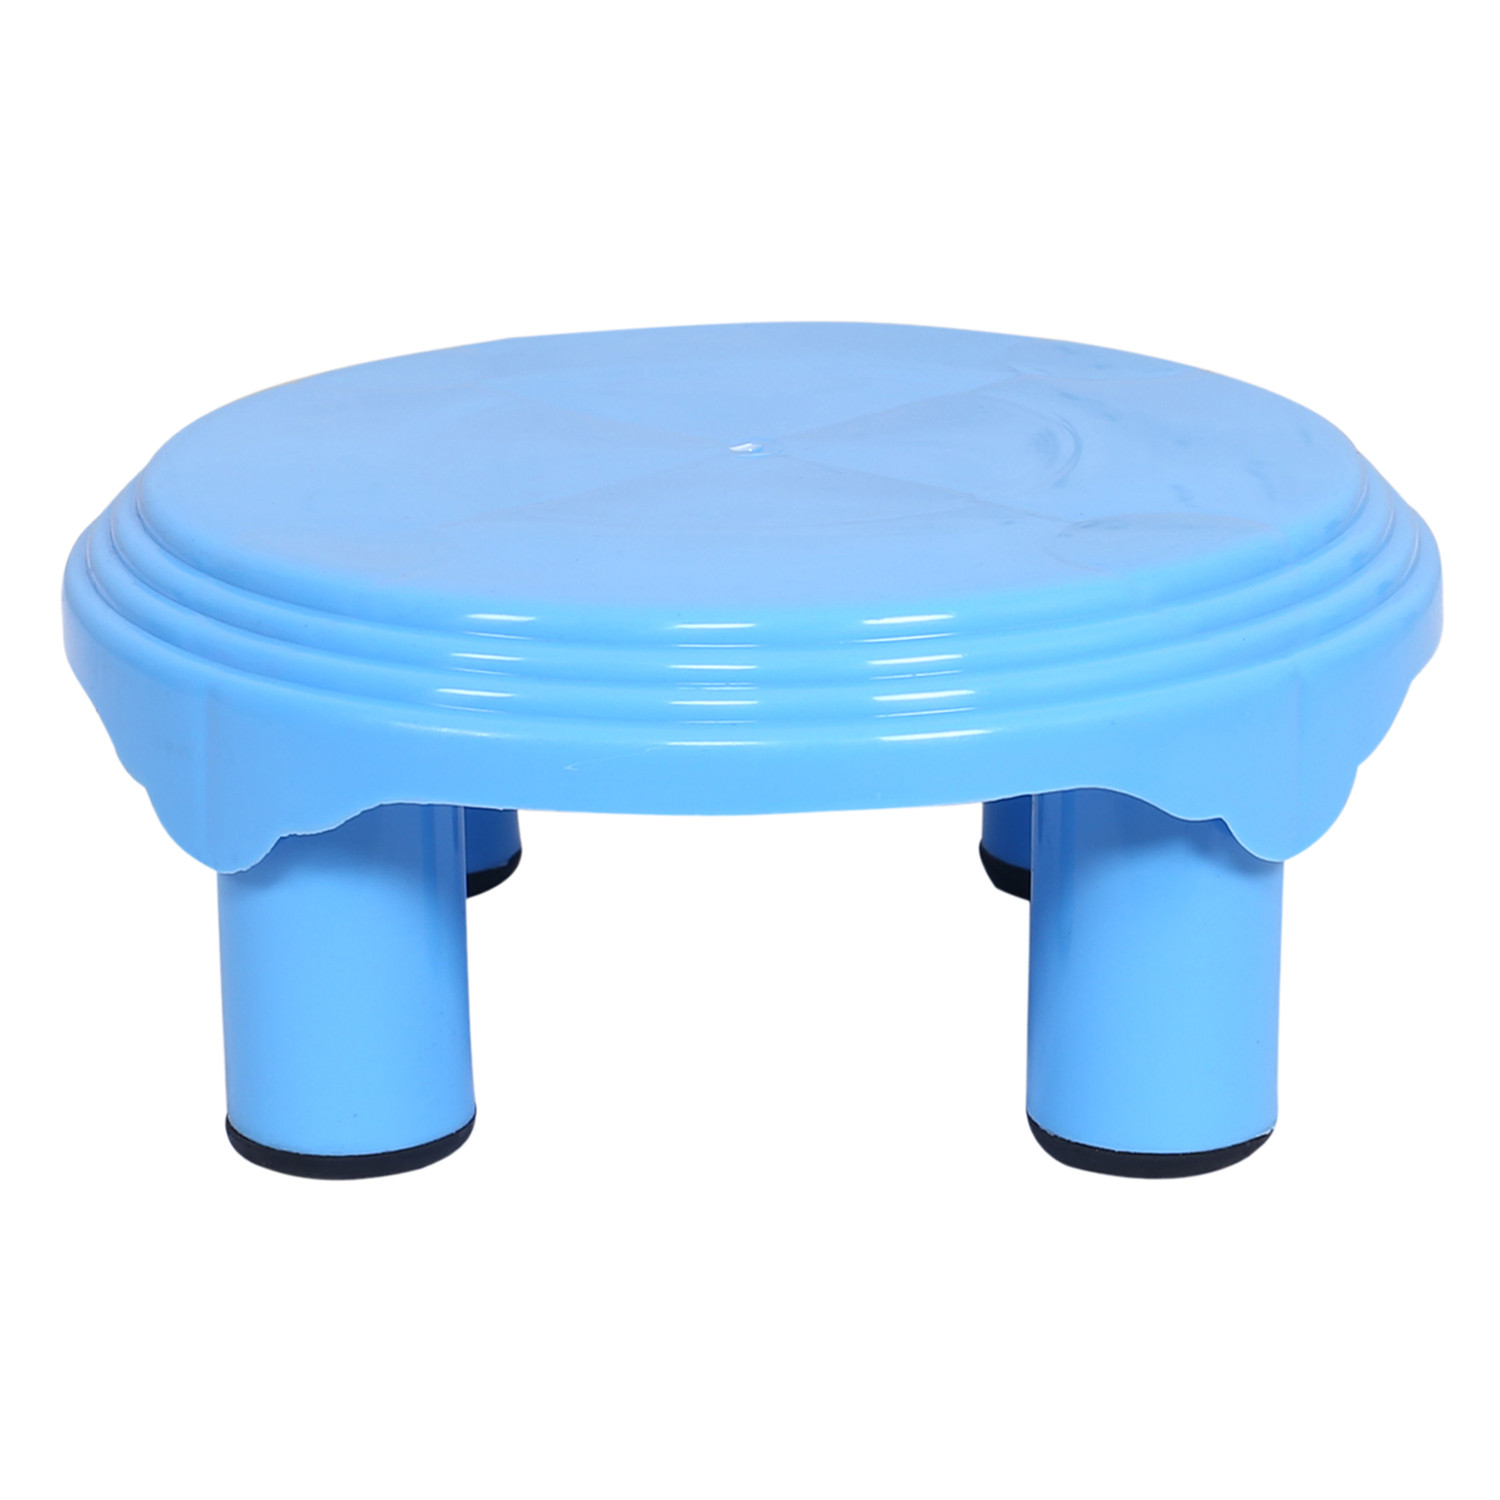 Kuber Industries Bathroom Stool|Plastic Stool|Anti-slip Bathing Stool|Stool for Senior Citizen|Patla for Bathroom|Pack of 2 (Mint Green & Sky Blue)